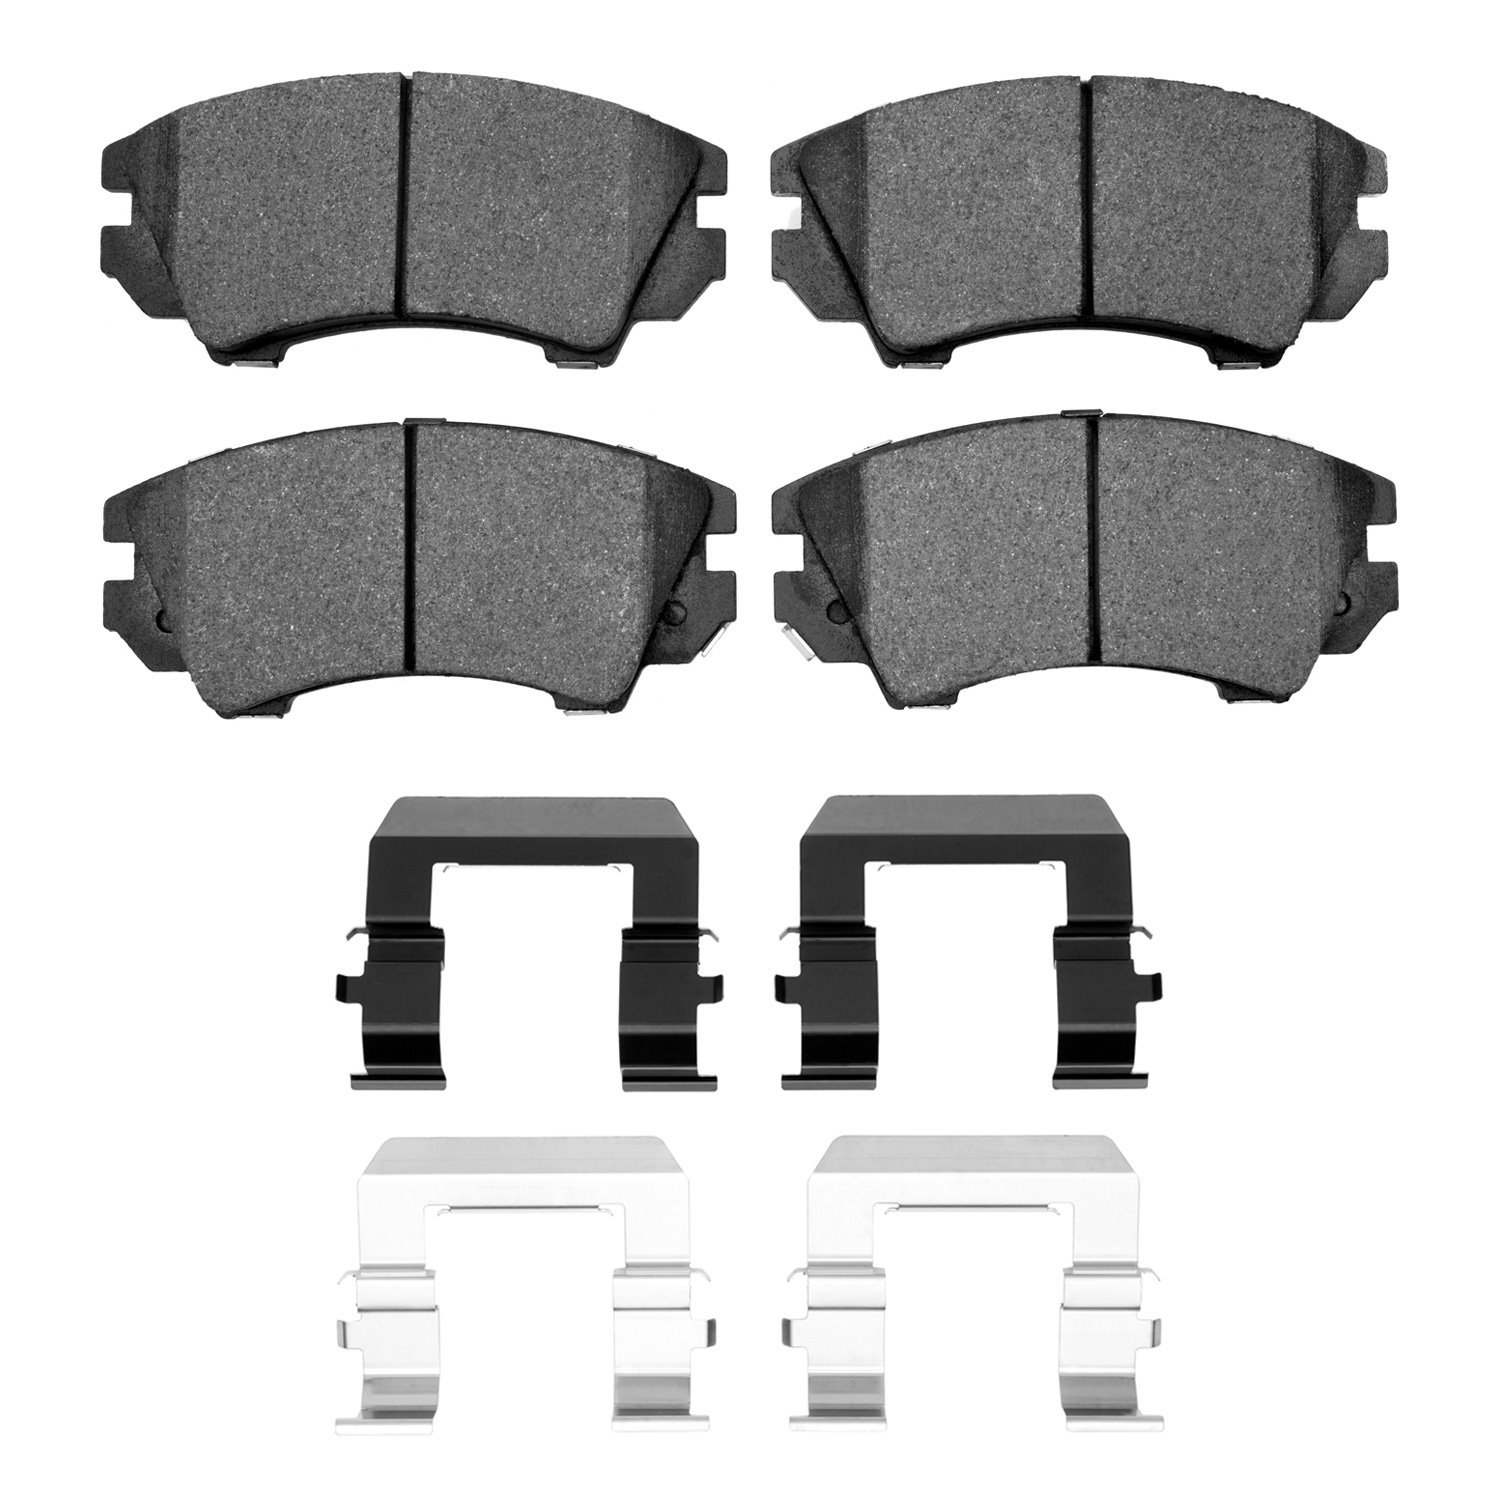 1552-1404-01 5000 Advanced Low-Metallic Brake Pads & Hardware Kit, 2011-2017 GM, Position: Front